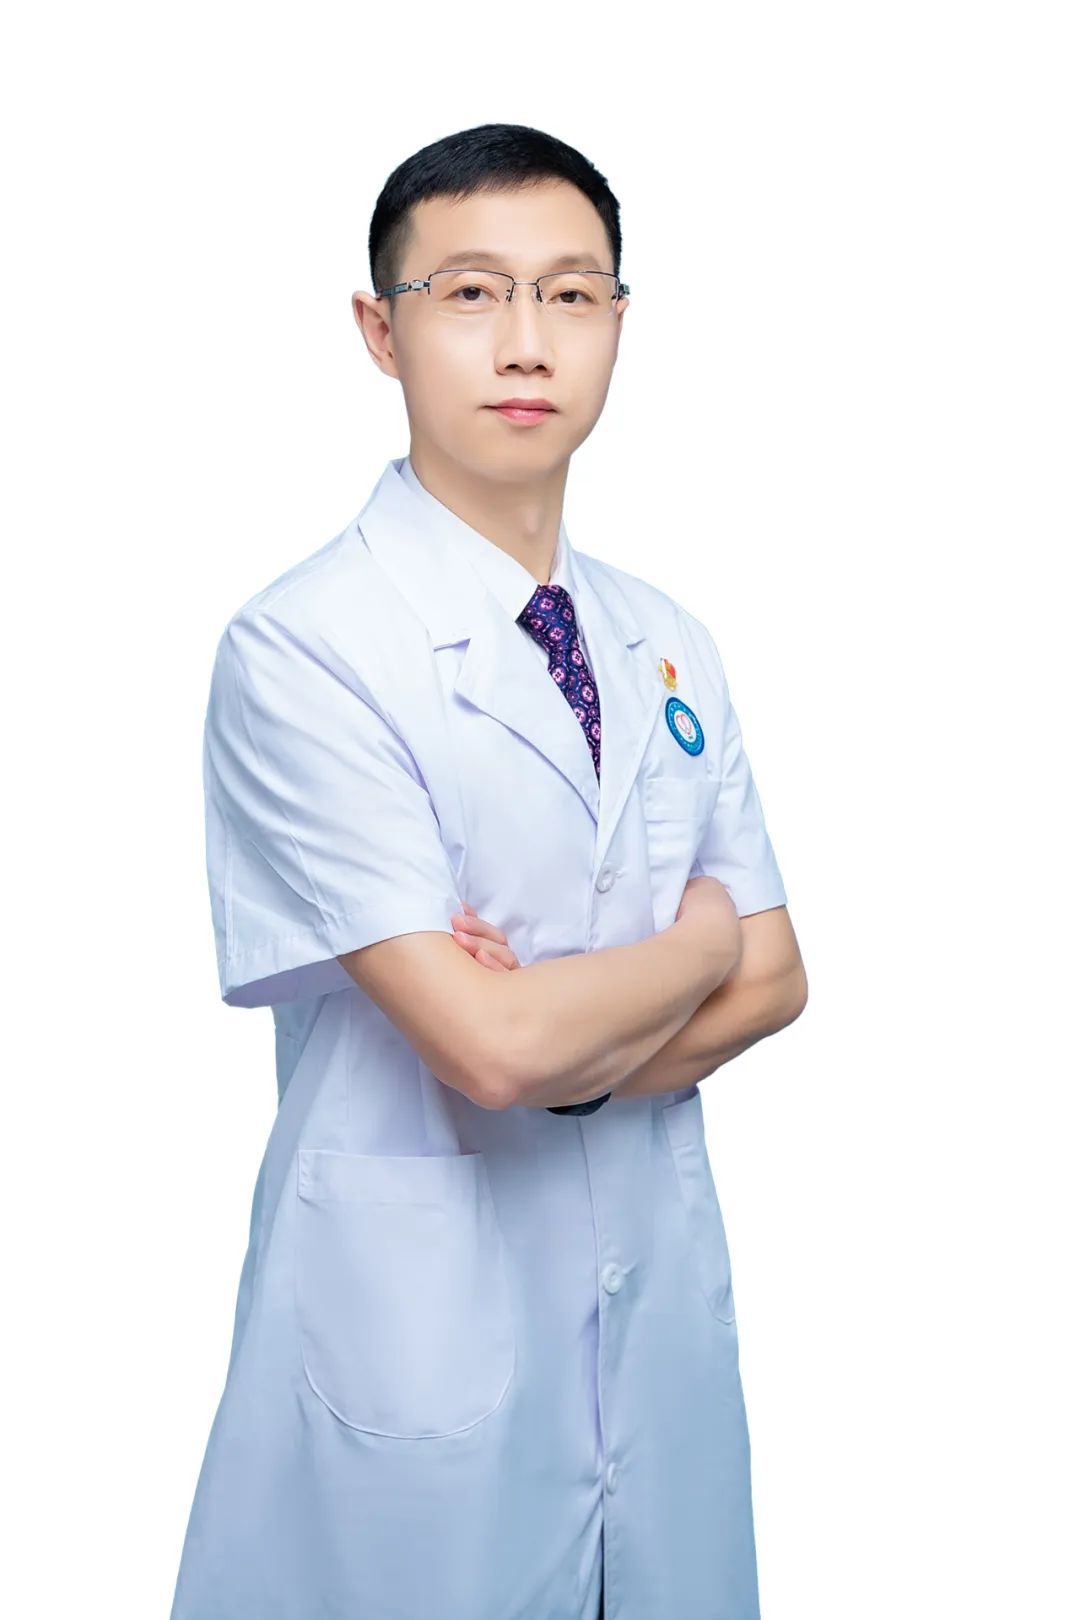 广西壮族自治区人民医院专家荣获健康广西行动形象大使称号